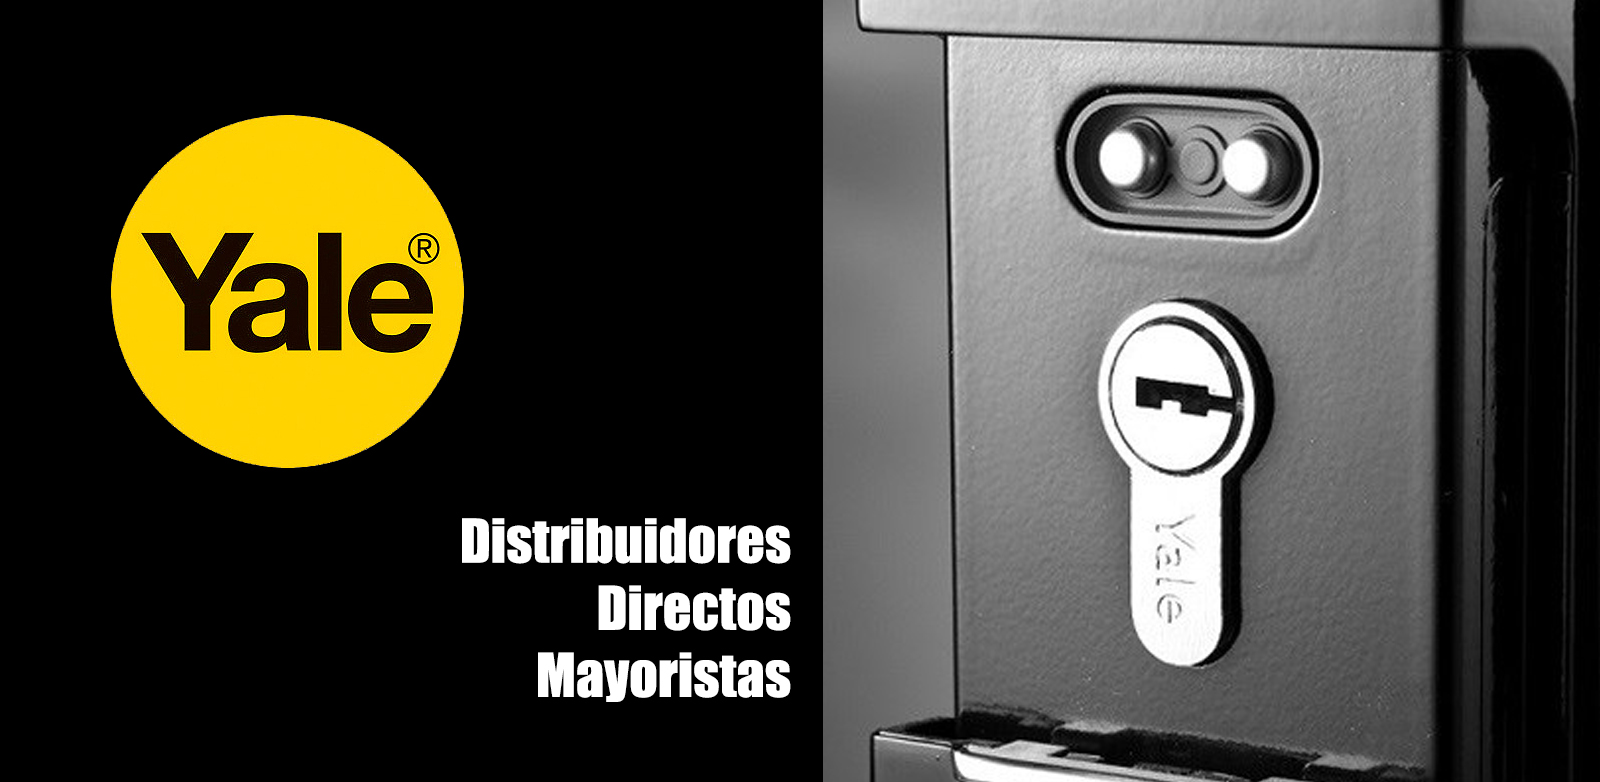 Yale - Distribuidores Directos Mayoristas - Bogota 